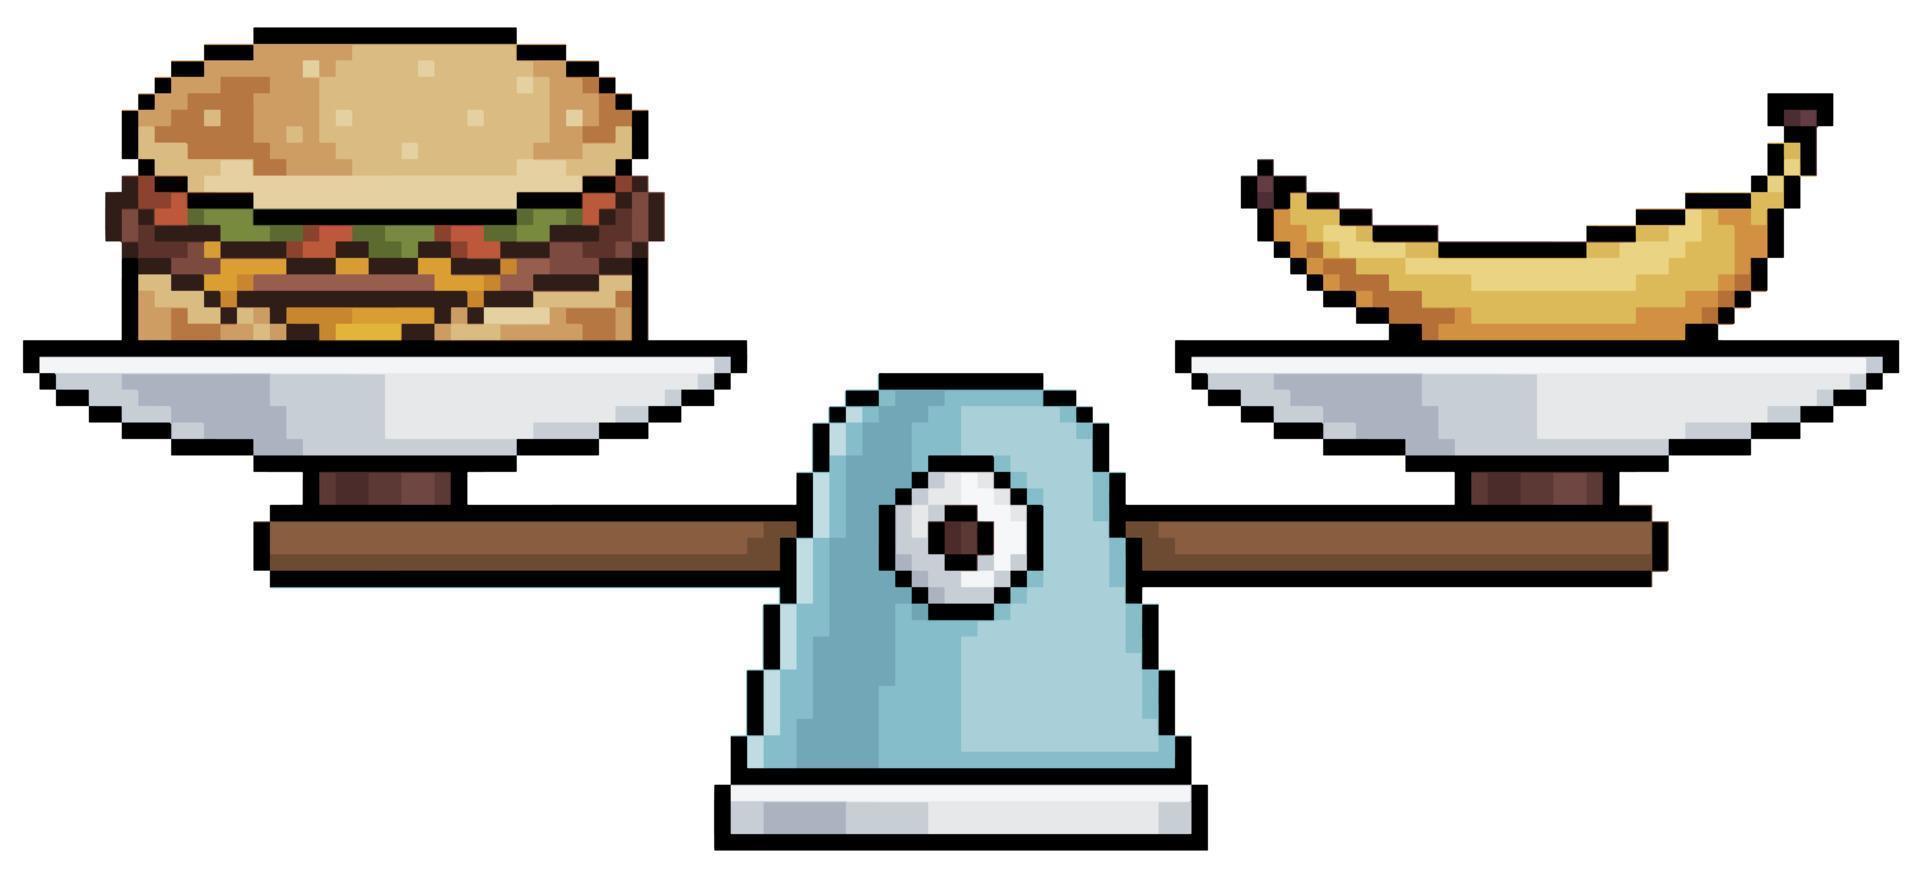 escala de comida de pixel art. comida saudável vs ícone de vetor de comida  ruim para jogo de 8 bits em fundo branco 9878006 Vetor no Vecteezy